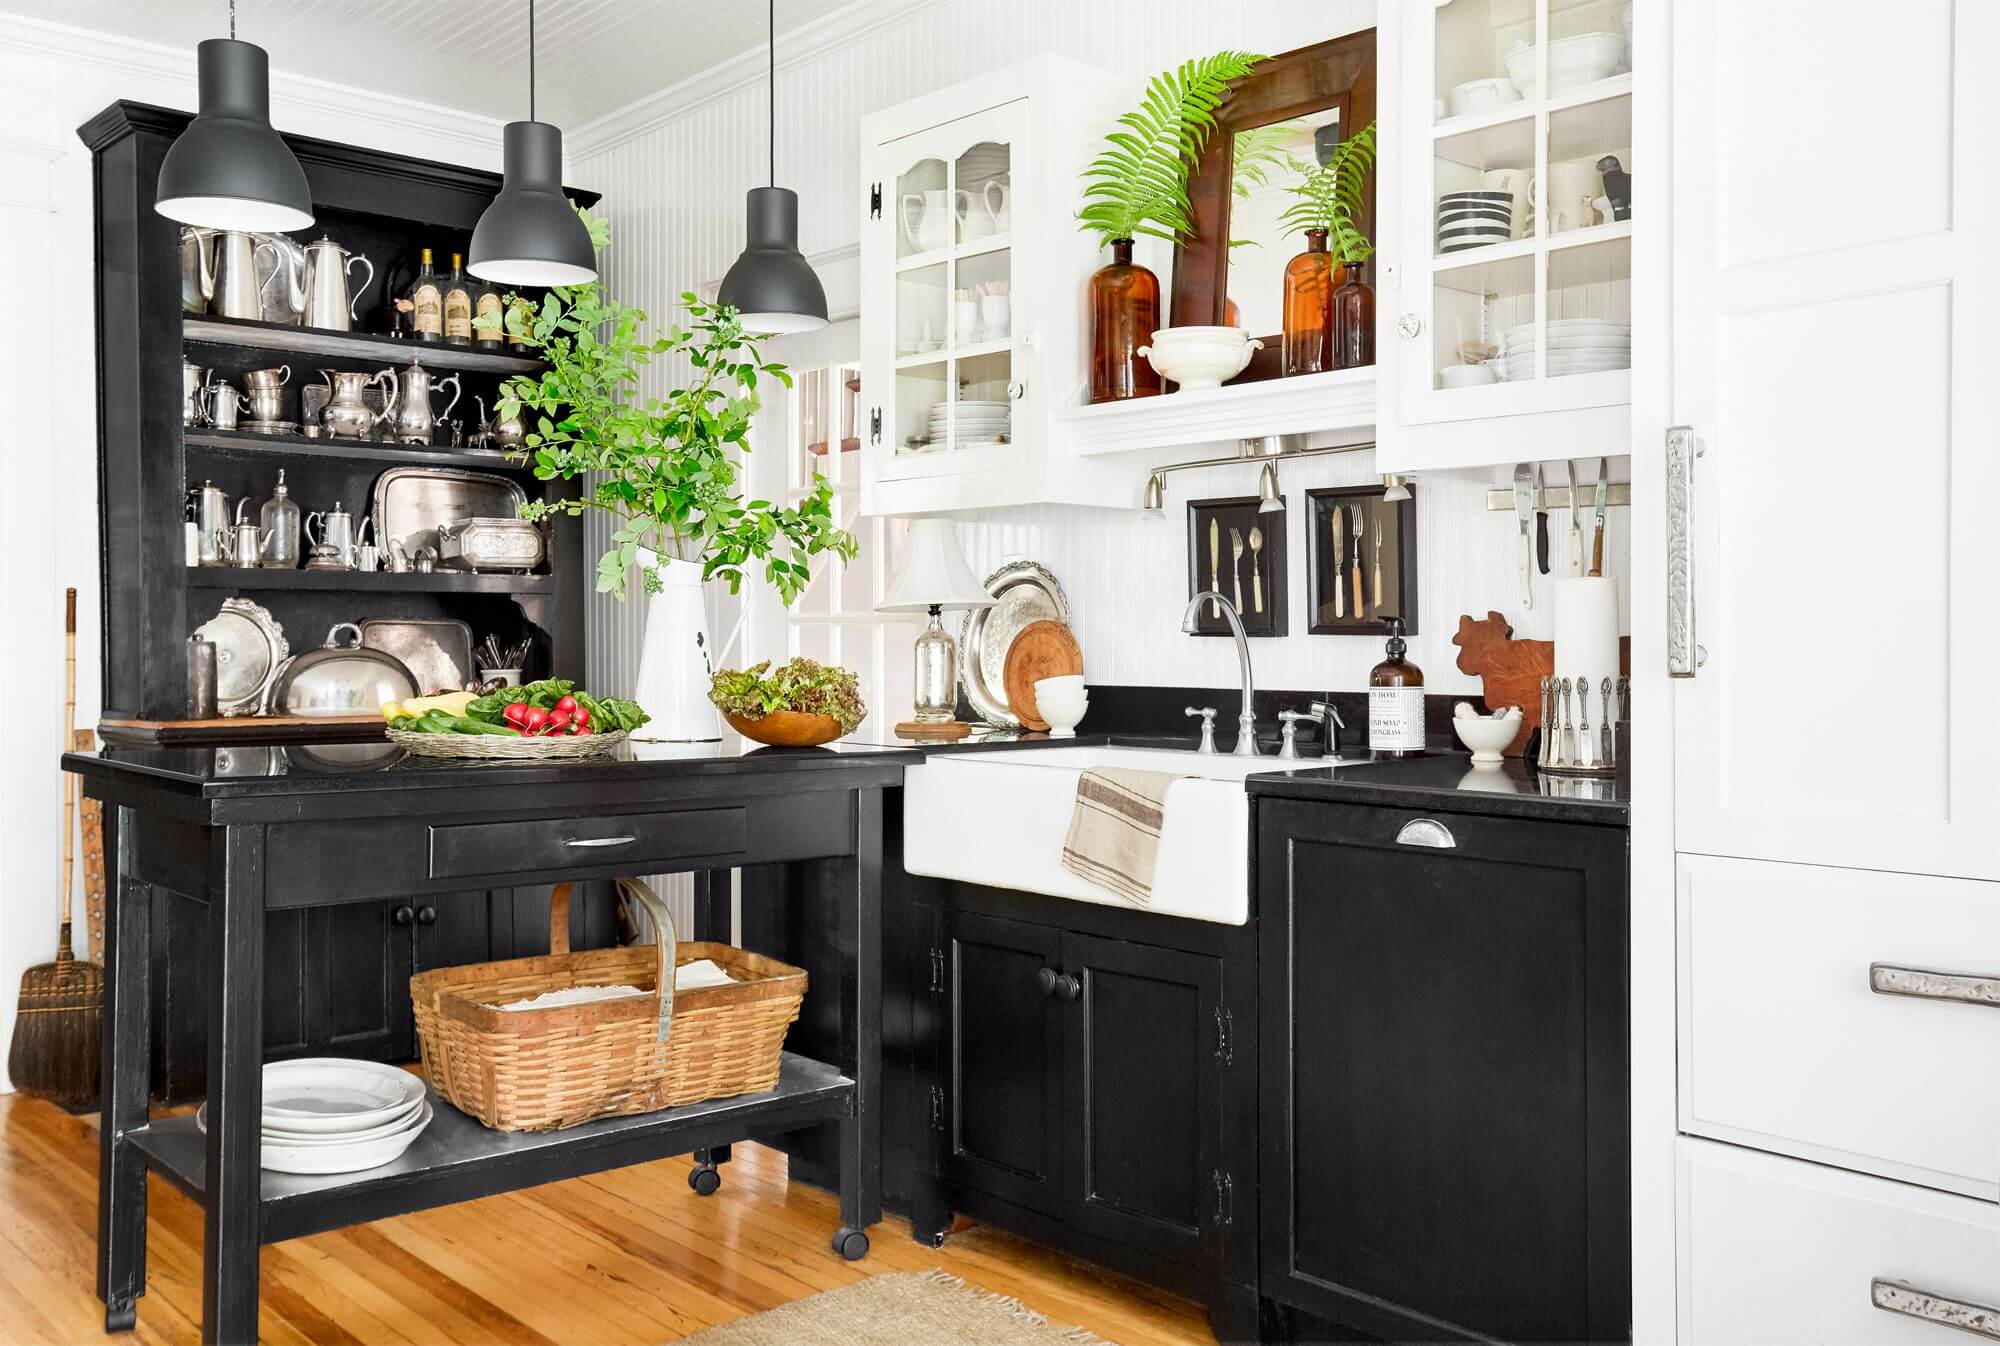 Creatice Farmhouse Kitchen Decor Black And White for Small Space